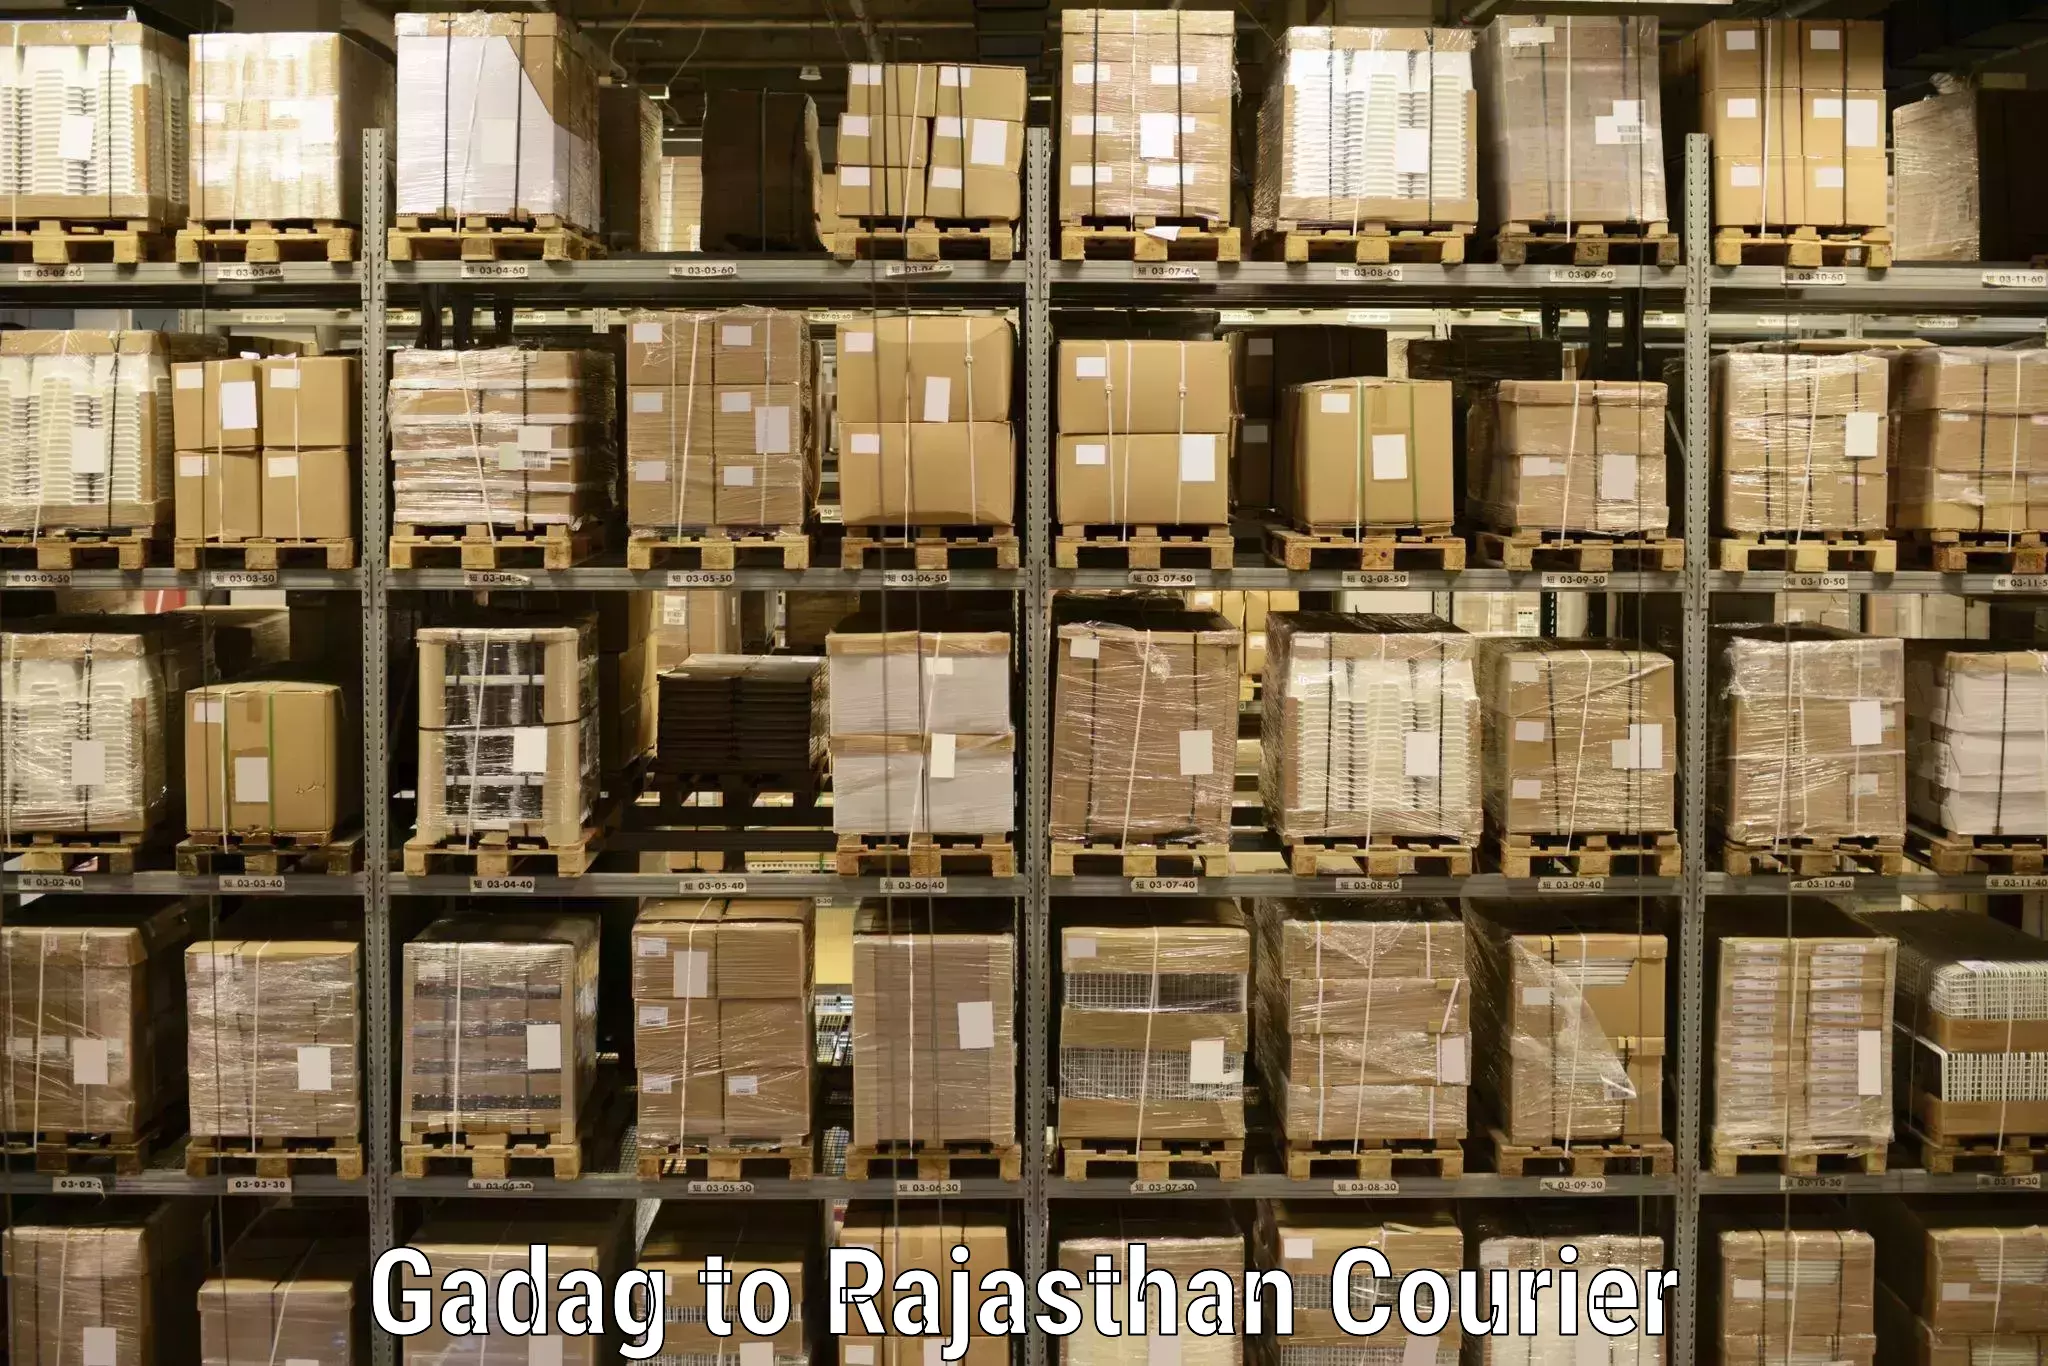 High-capacity parcel service Gadag to Bajore